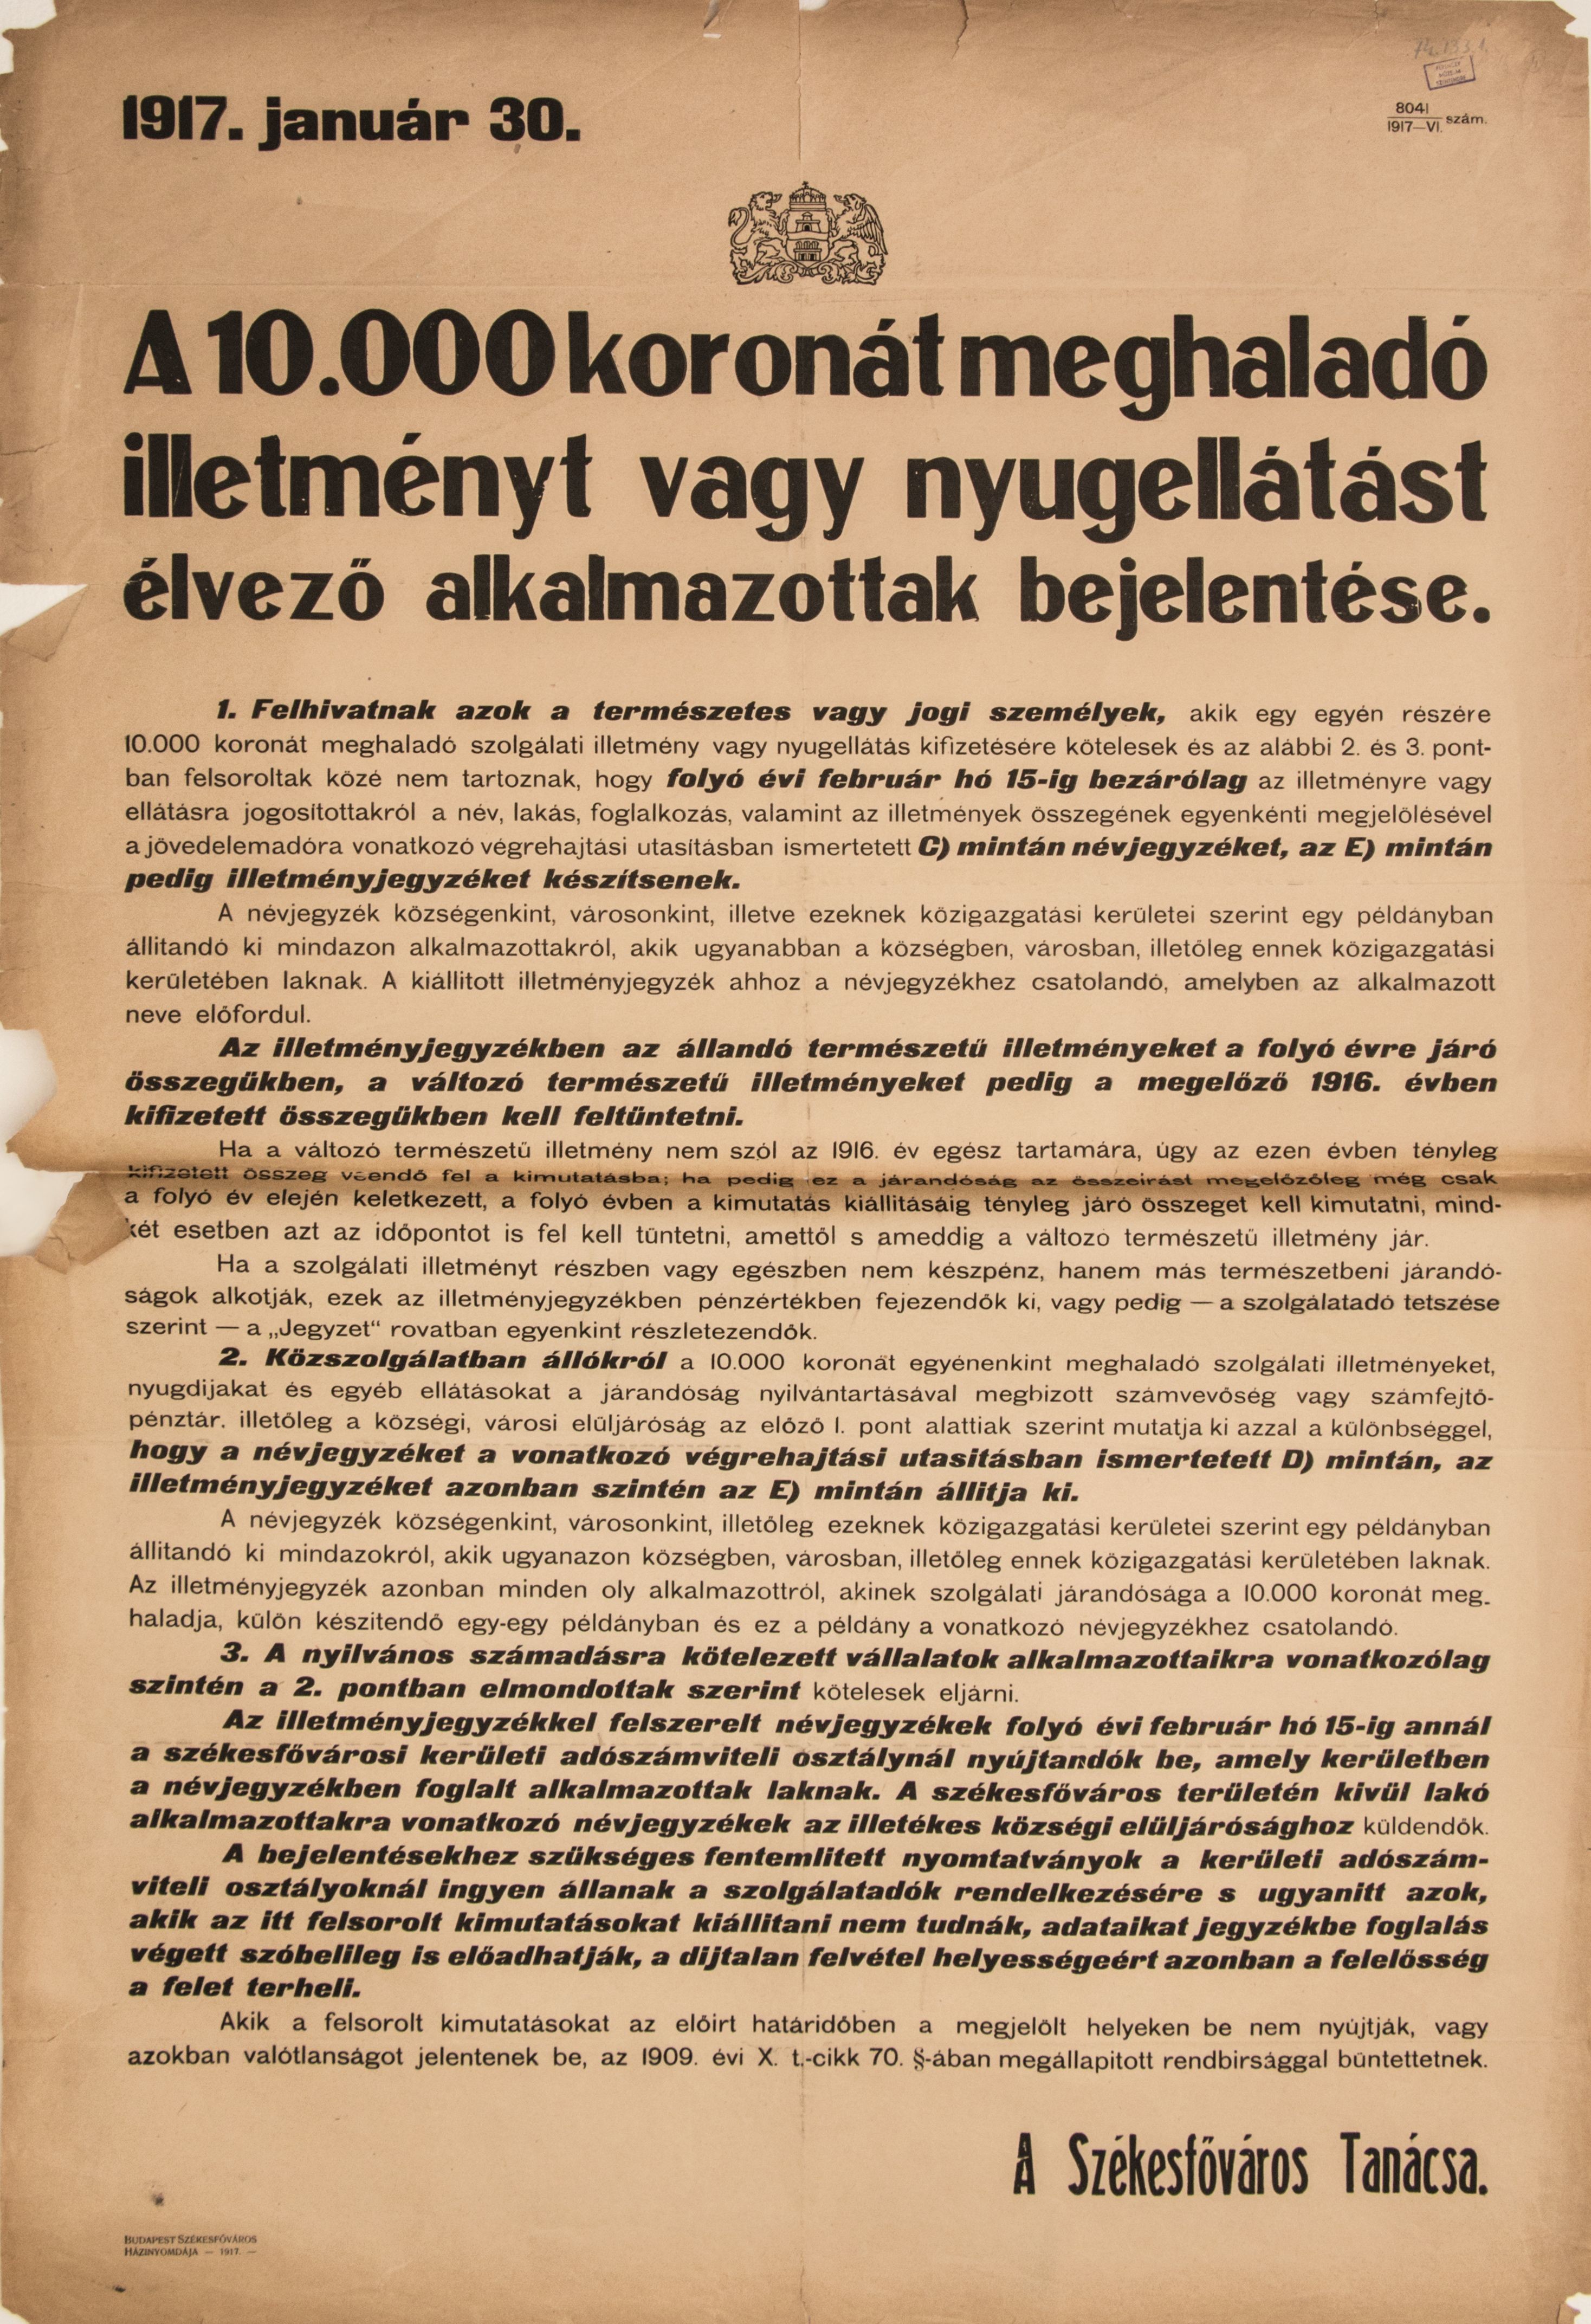 A 10.000 koronát meghaladó illetményt élvező alkalmazottak bejelentése, 1917.01.30. (hirdetmény) (Ferenczy Múzeumi Centrum CC BY-NC-SA)